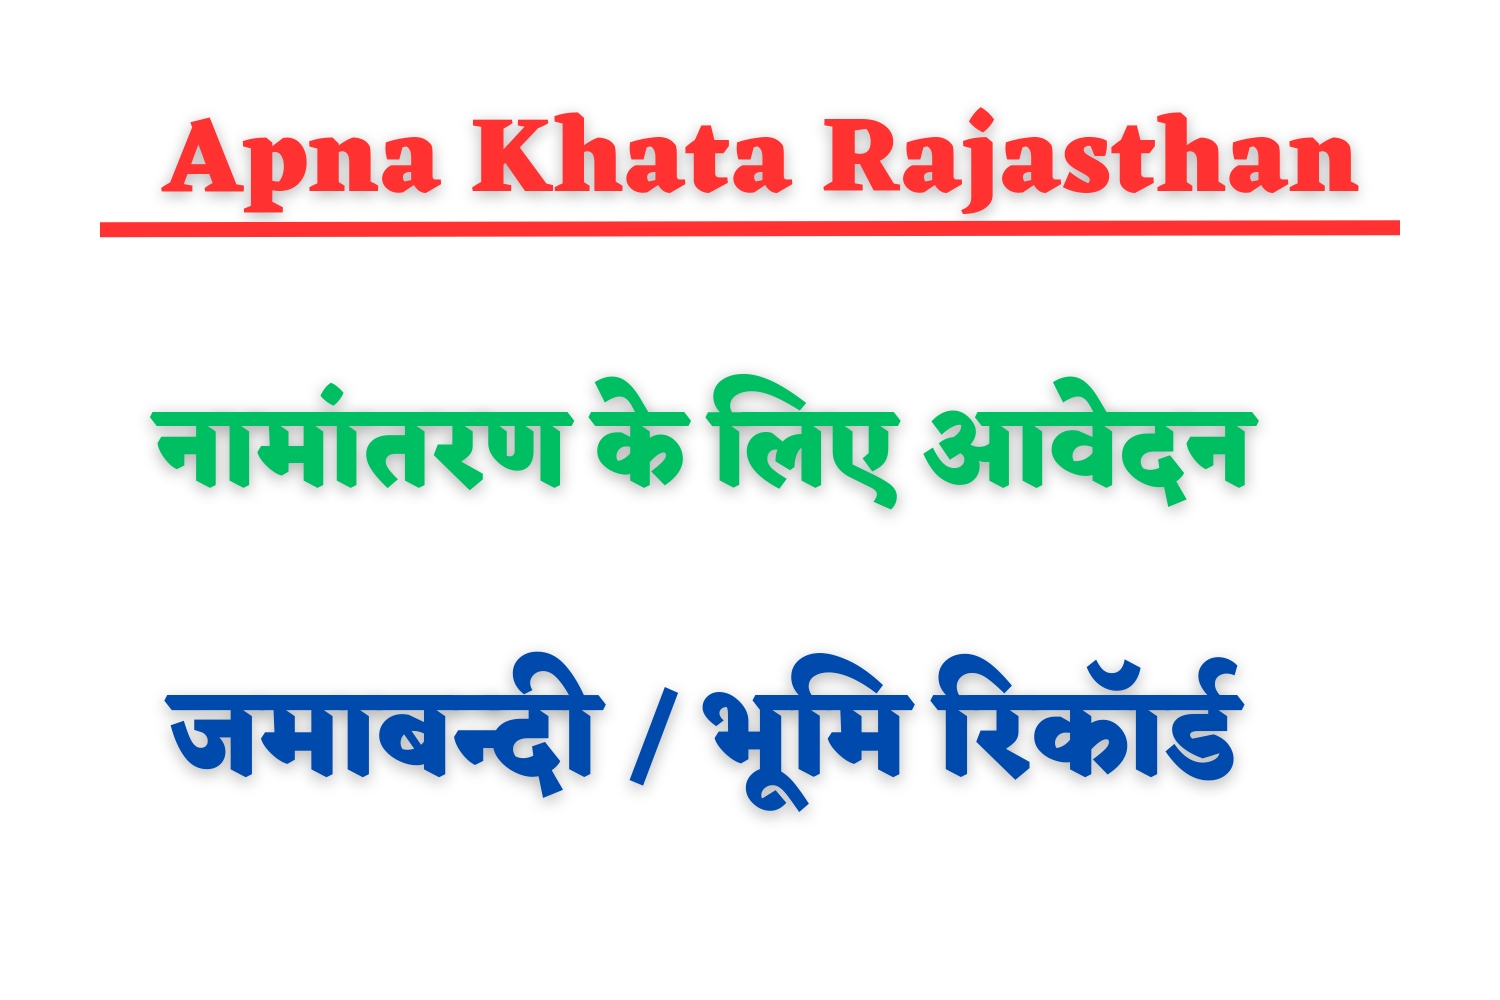 Apna Khata Rajasthan